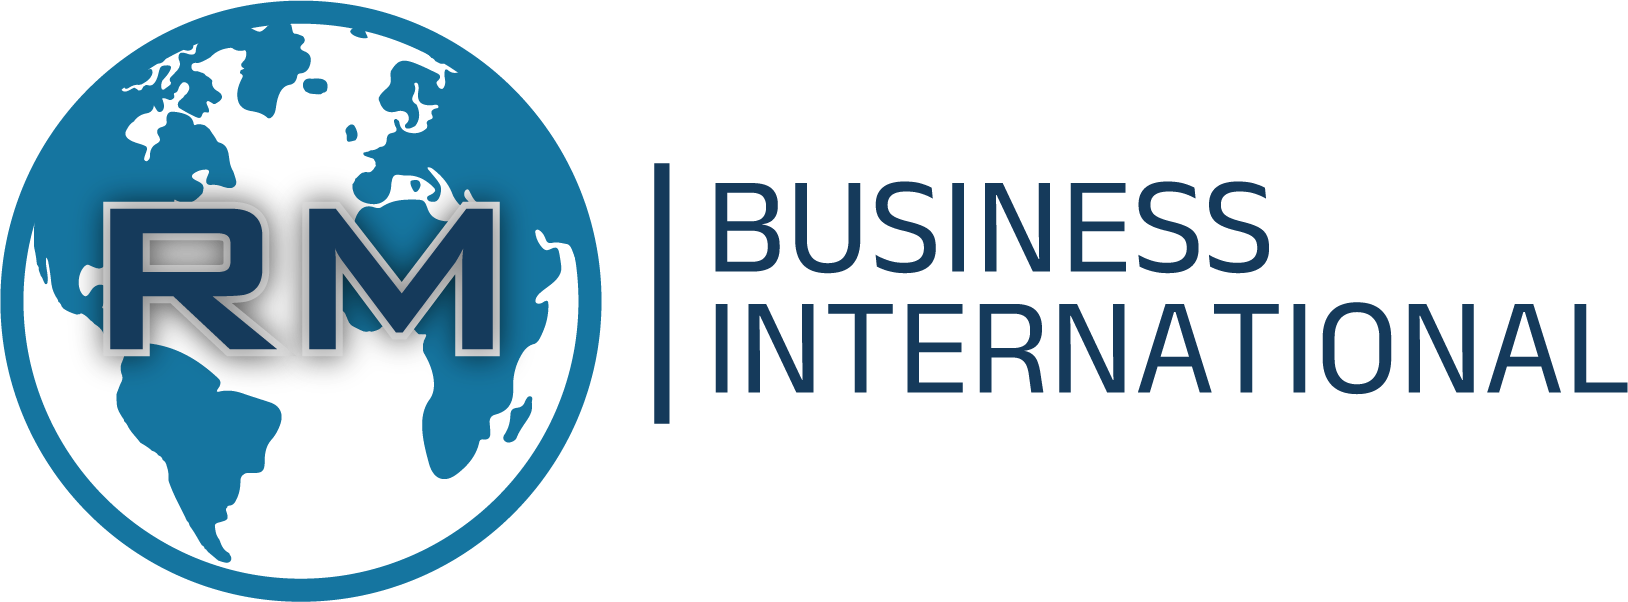 RM Business International